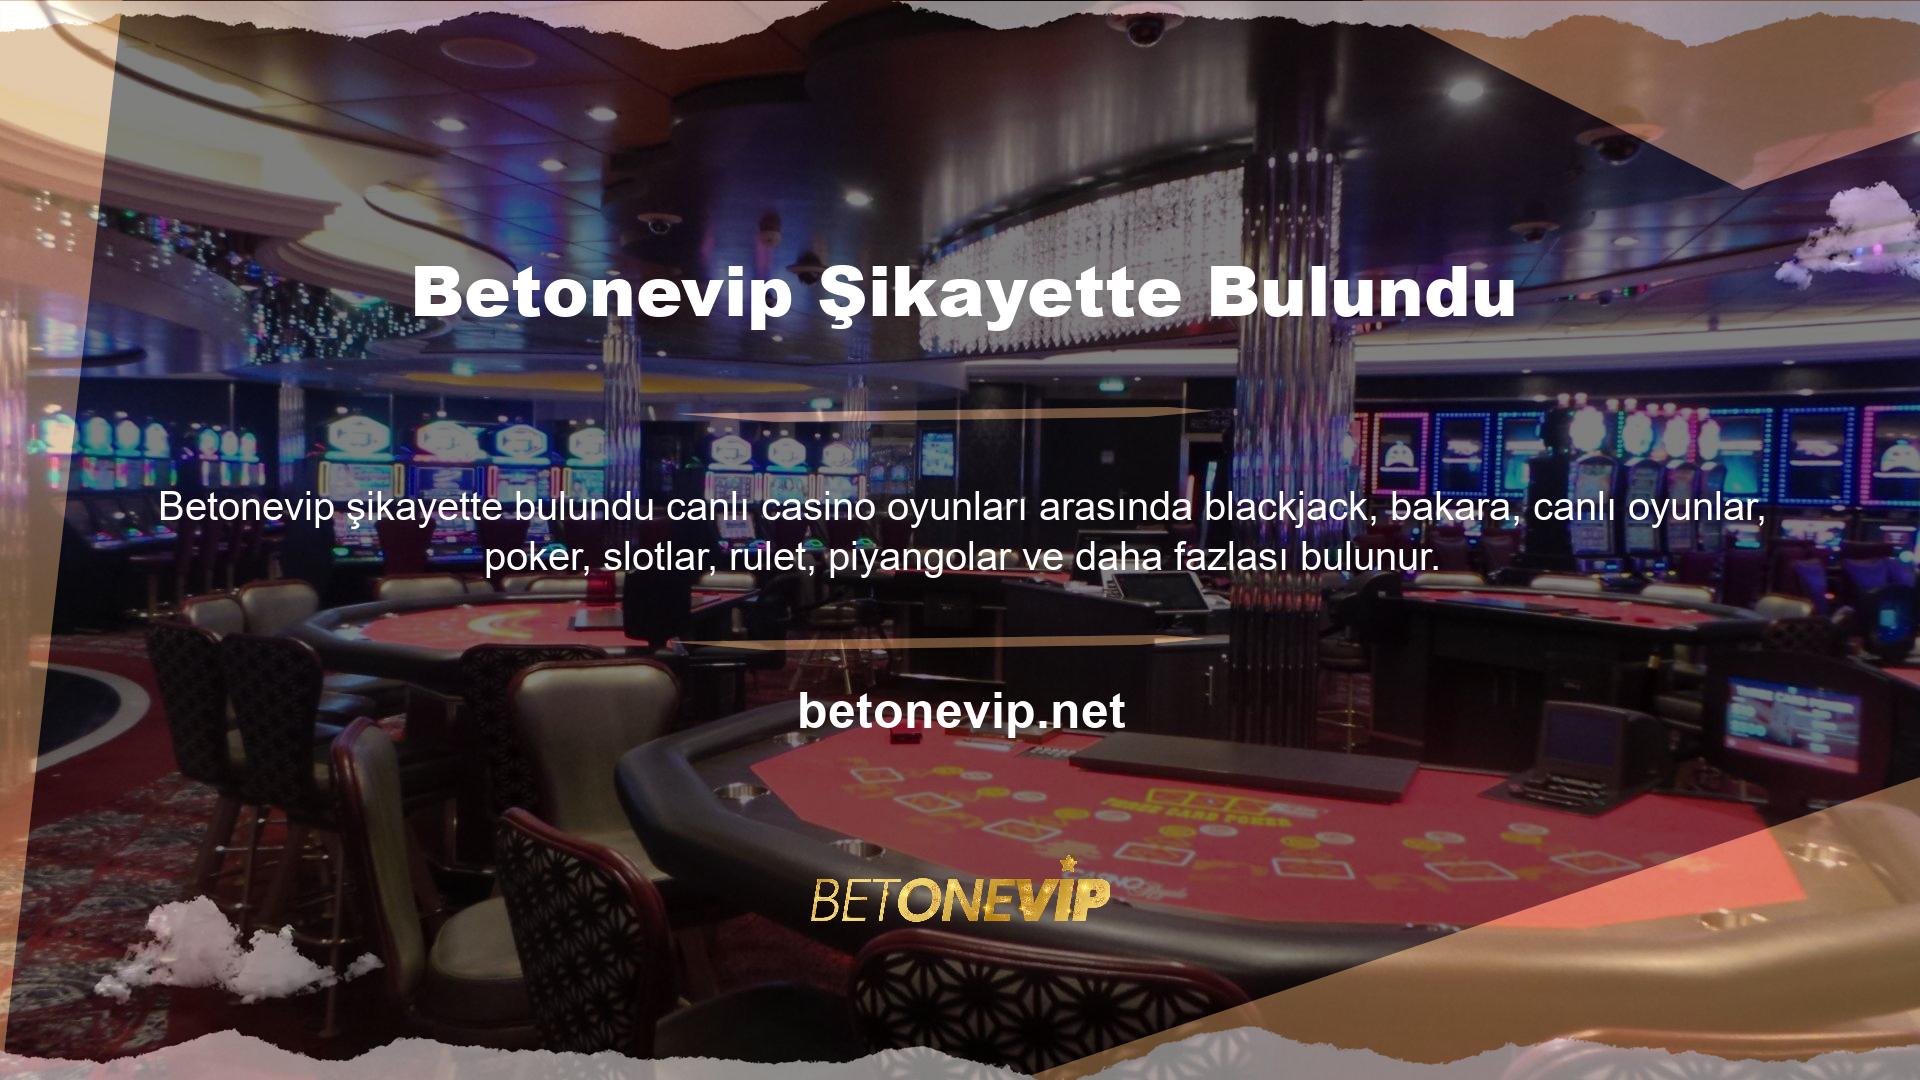 Betonevip canlı casino oyununu oynamak için canlı krupiye ve farklı odalar seçebilirsiniz